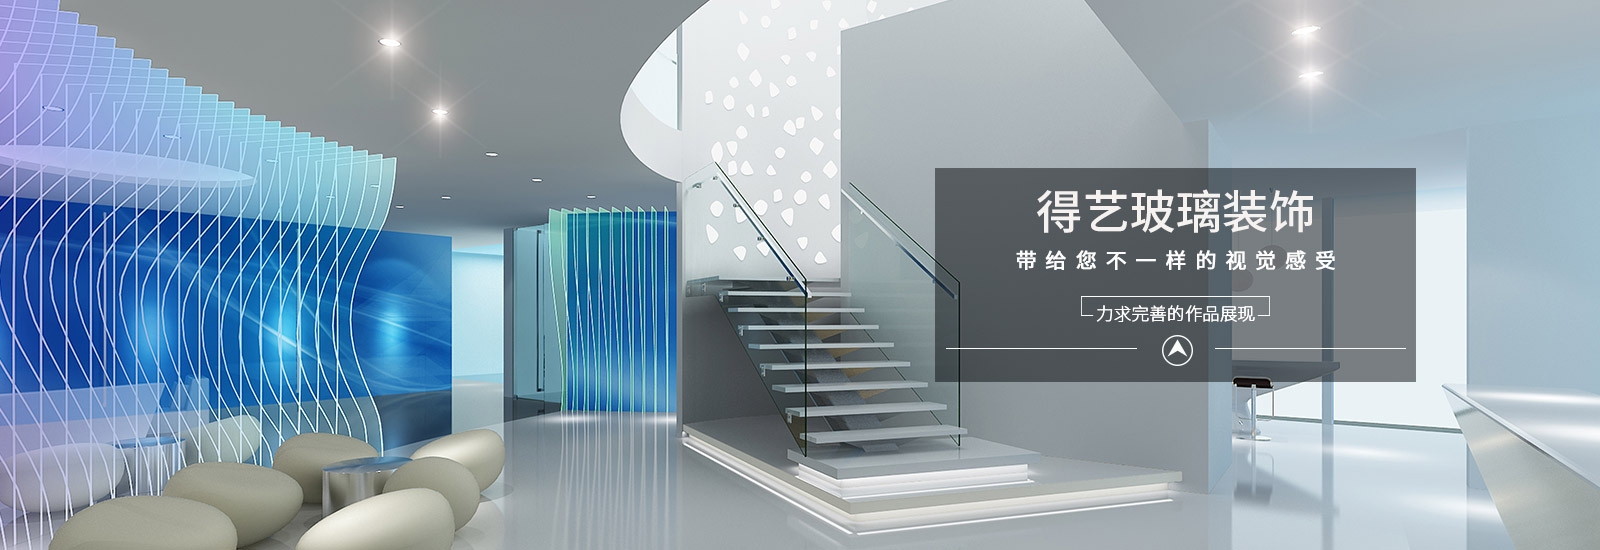 上海艺术玻璃设计